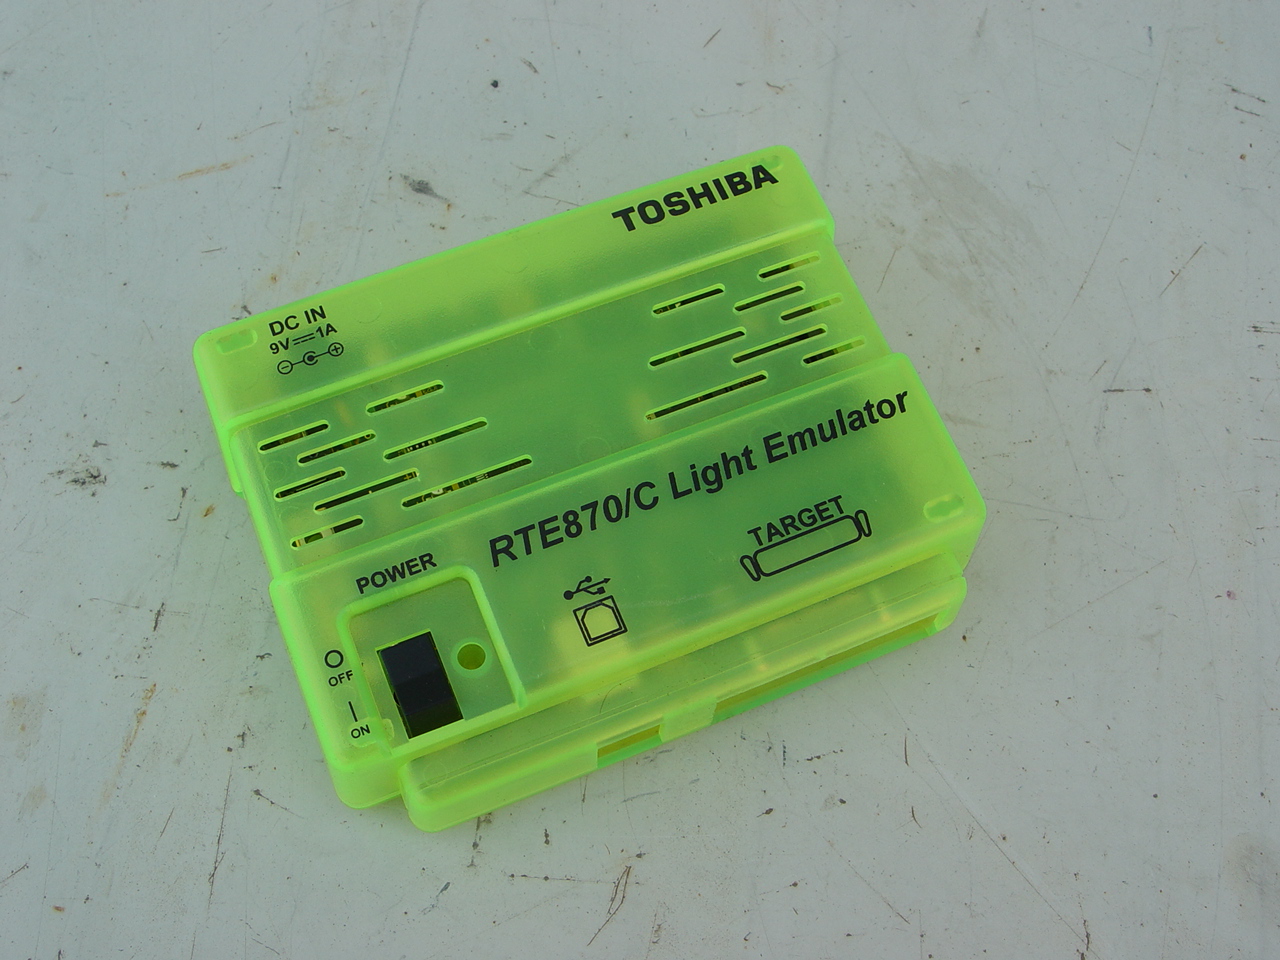 [A5701] TOSHIBA RTE870/C LIGHT EMULATOR BMP86A3000 20A